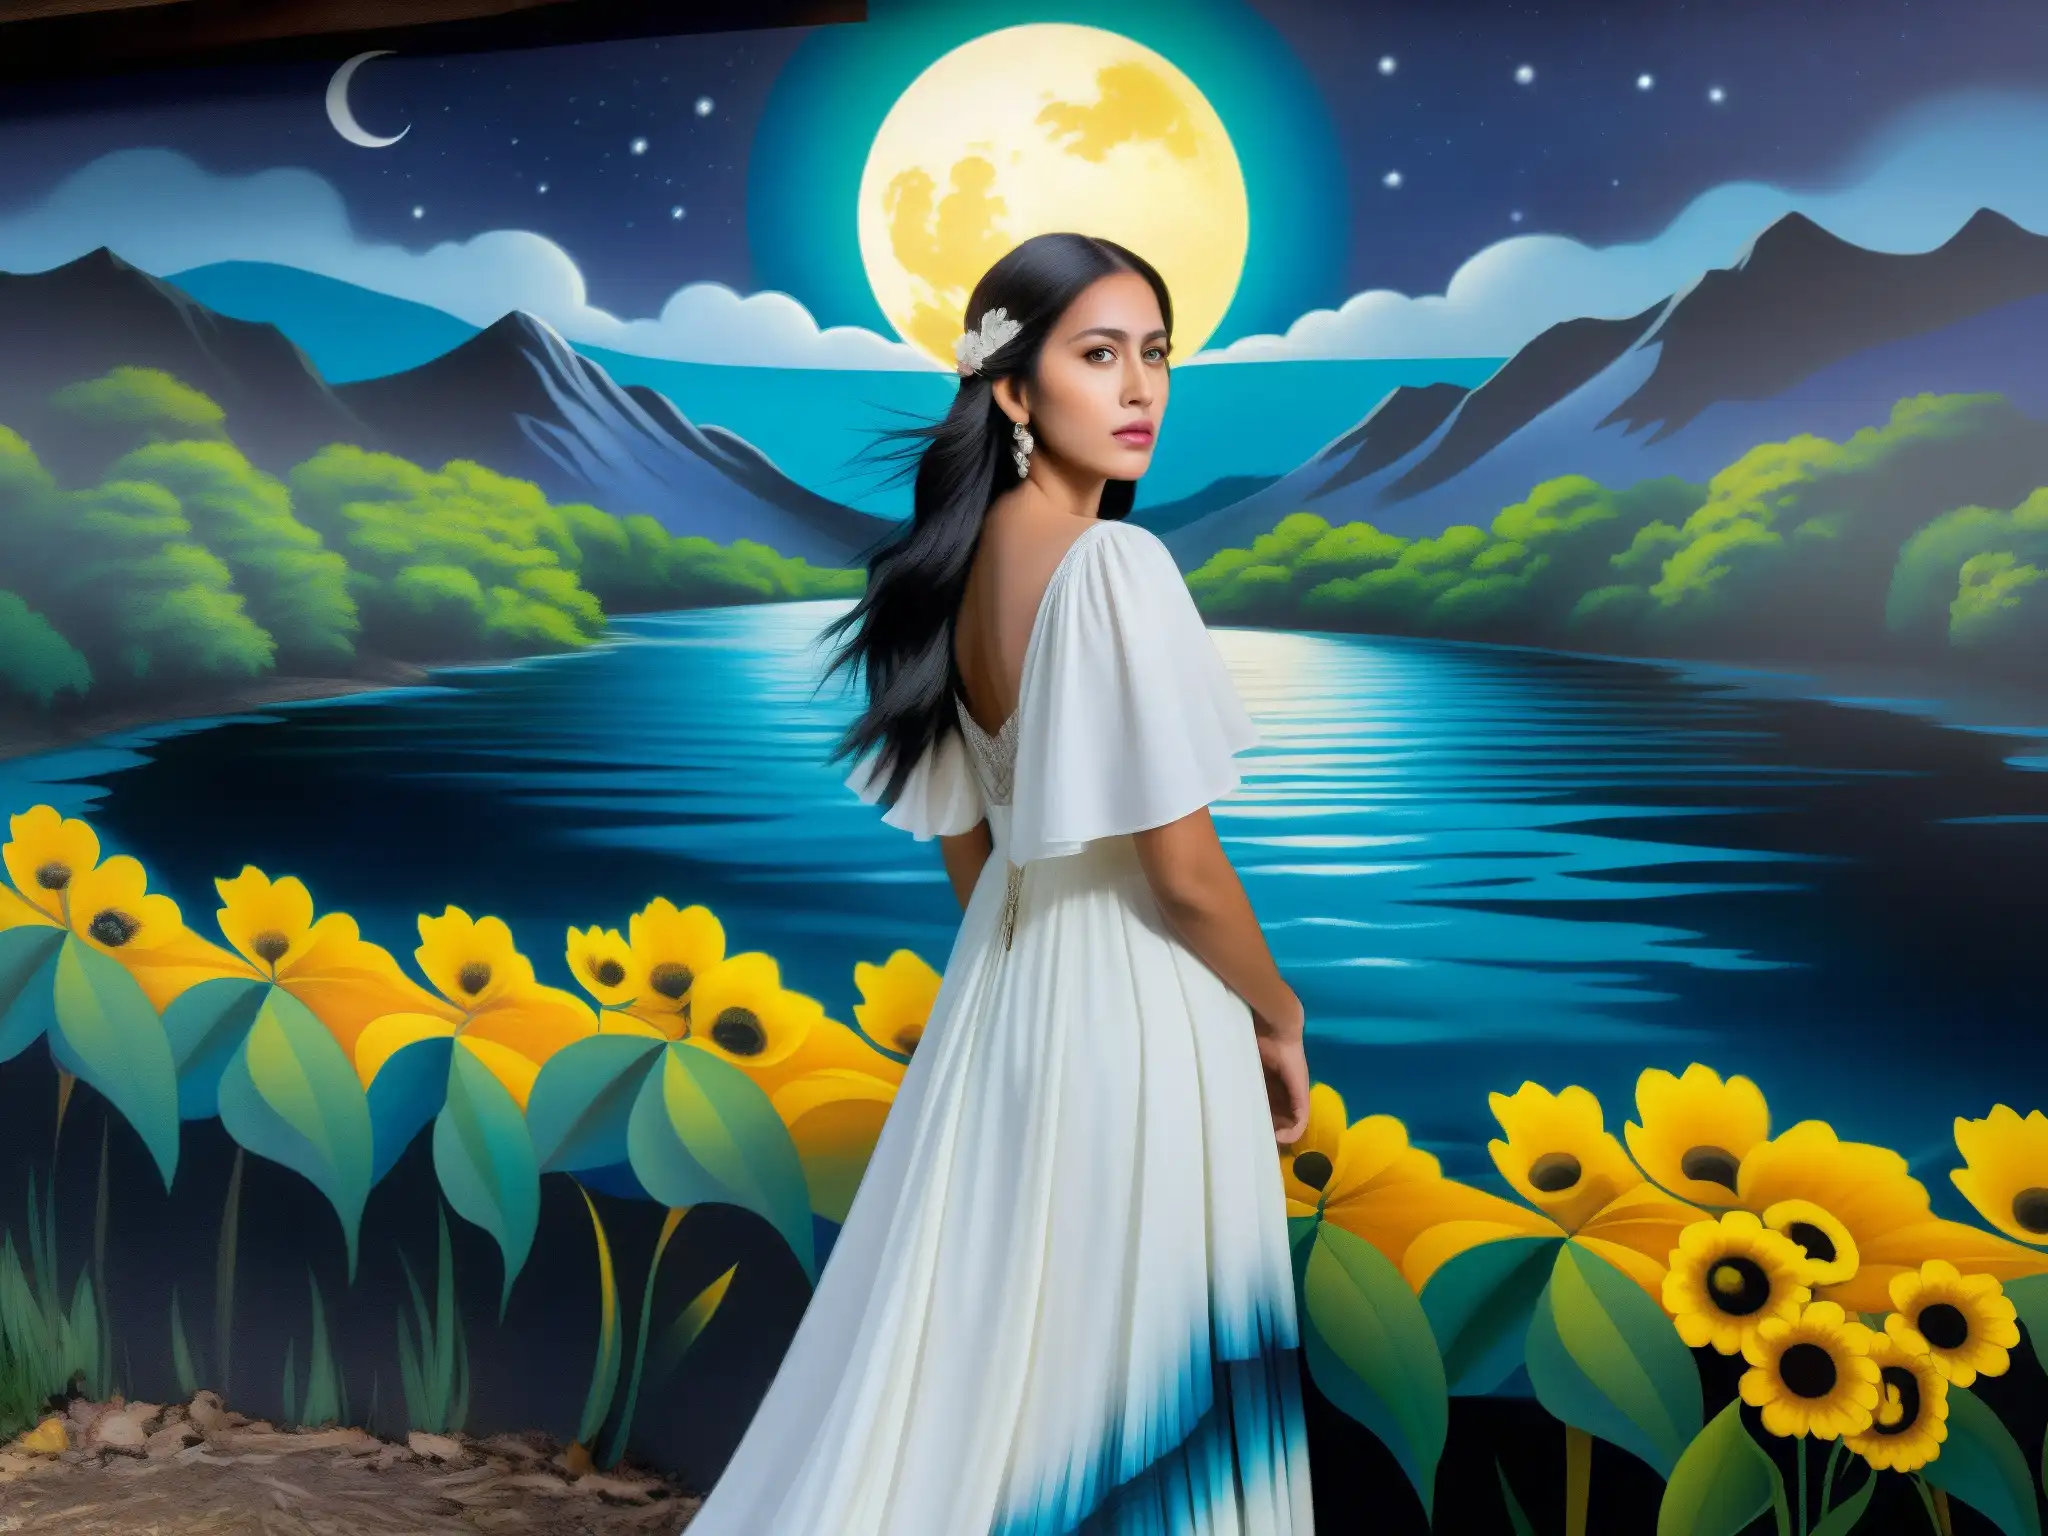 Un impresionante mural de La Llorona en colores vivos, su vestido blanco ondeando junto al río a la luz de la luna